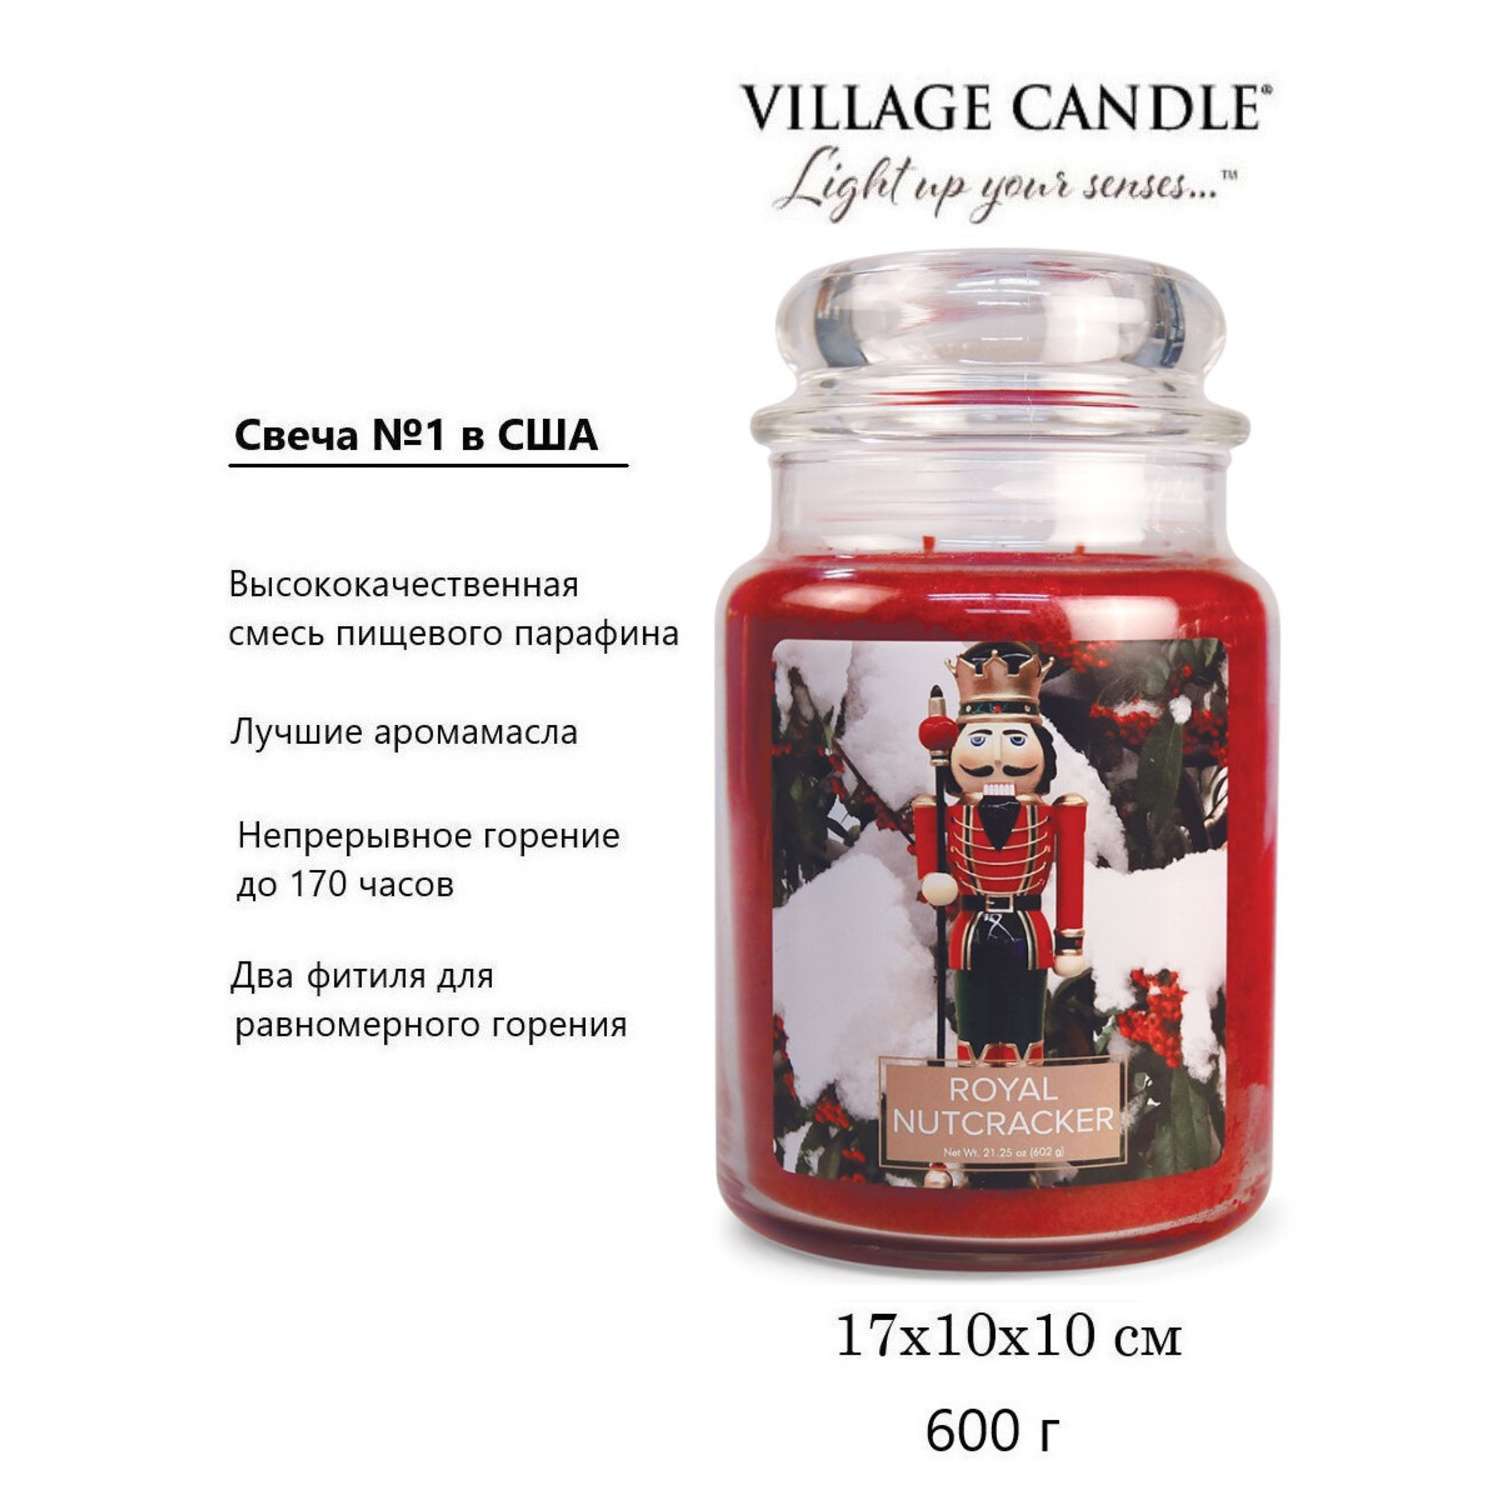 Свеча Village Candle ароматическая Королевский Щелкунчик 4260191 - фото 3